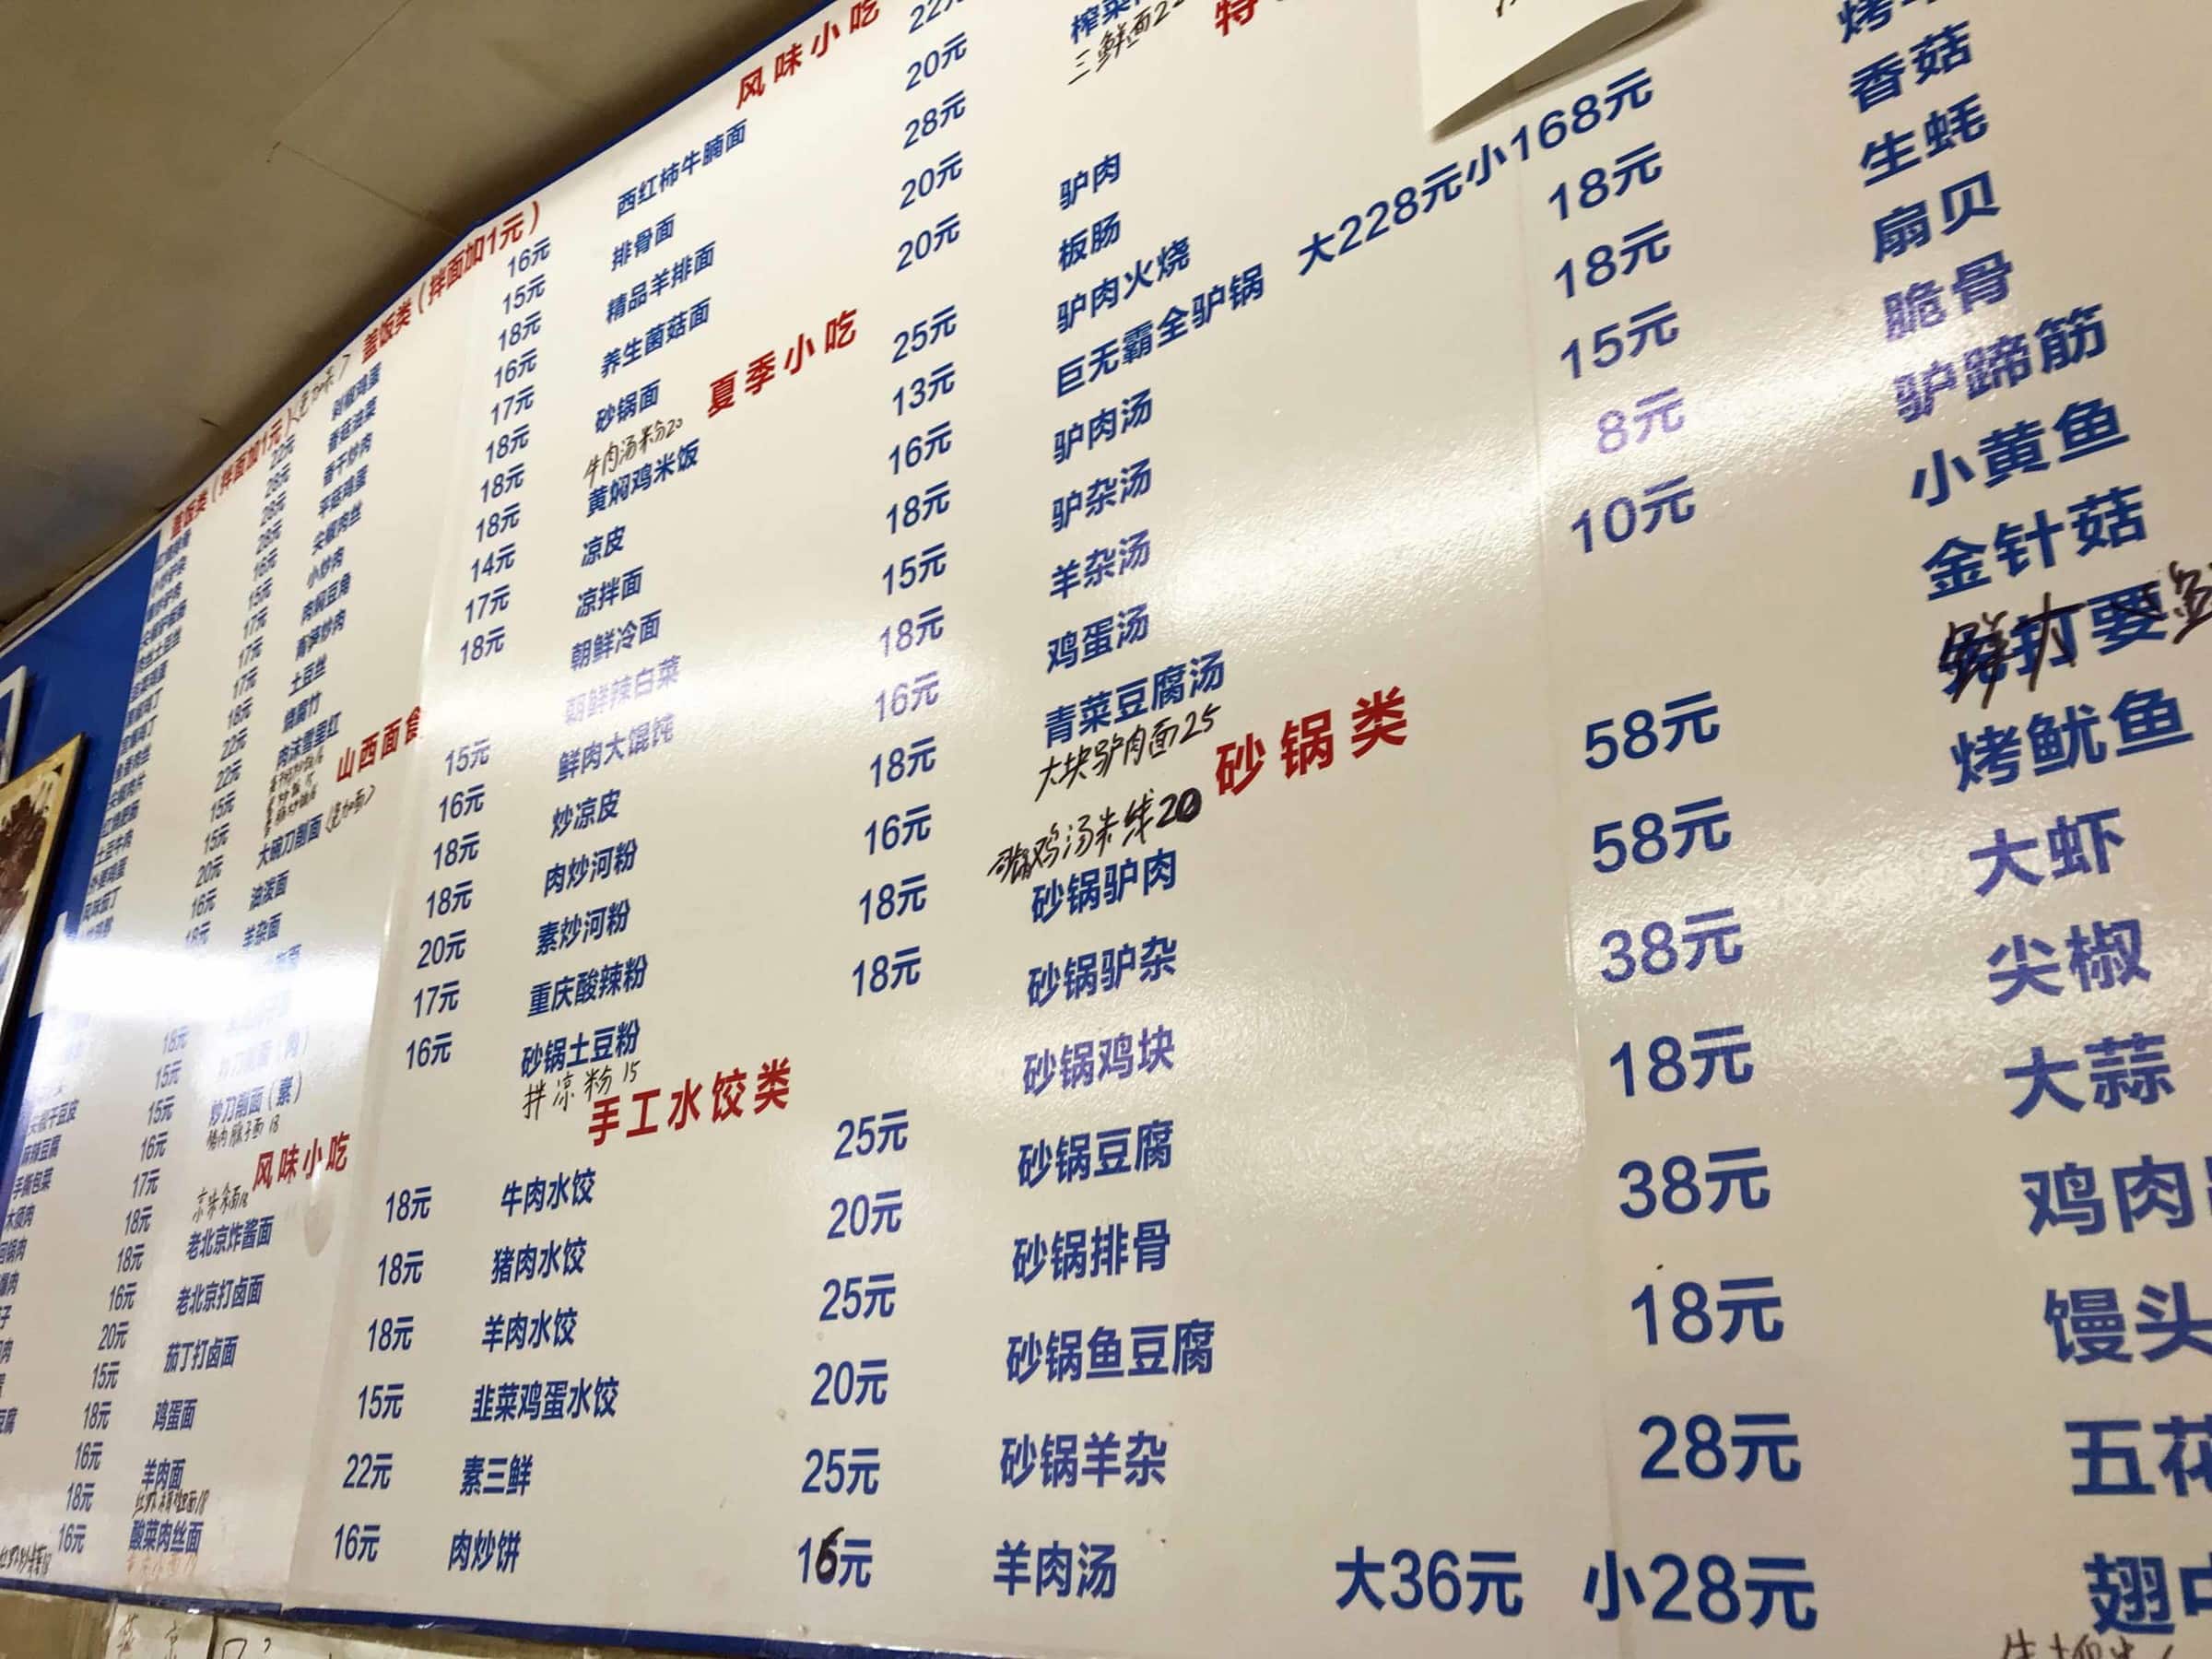 Chinesische Speisekarte in einem einfachen Restaurant in Peking. Schriftzeichen auf einer Tafel an der Wand